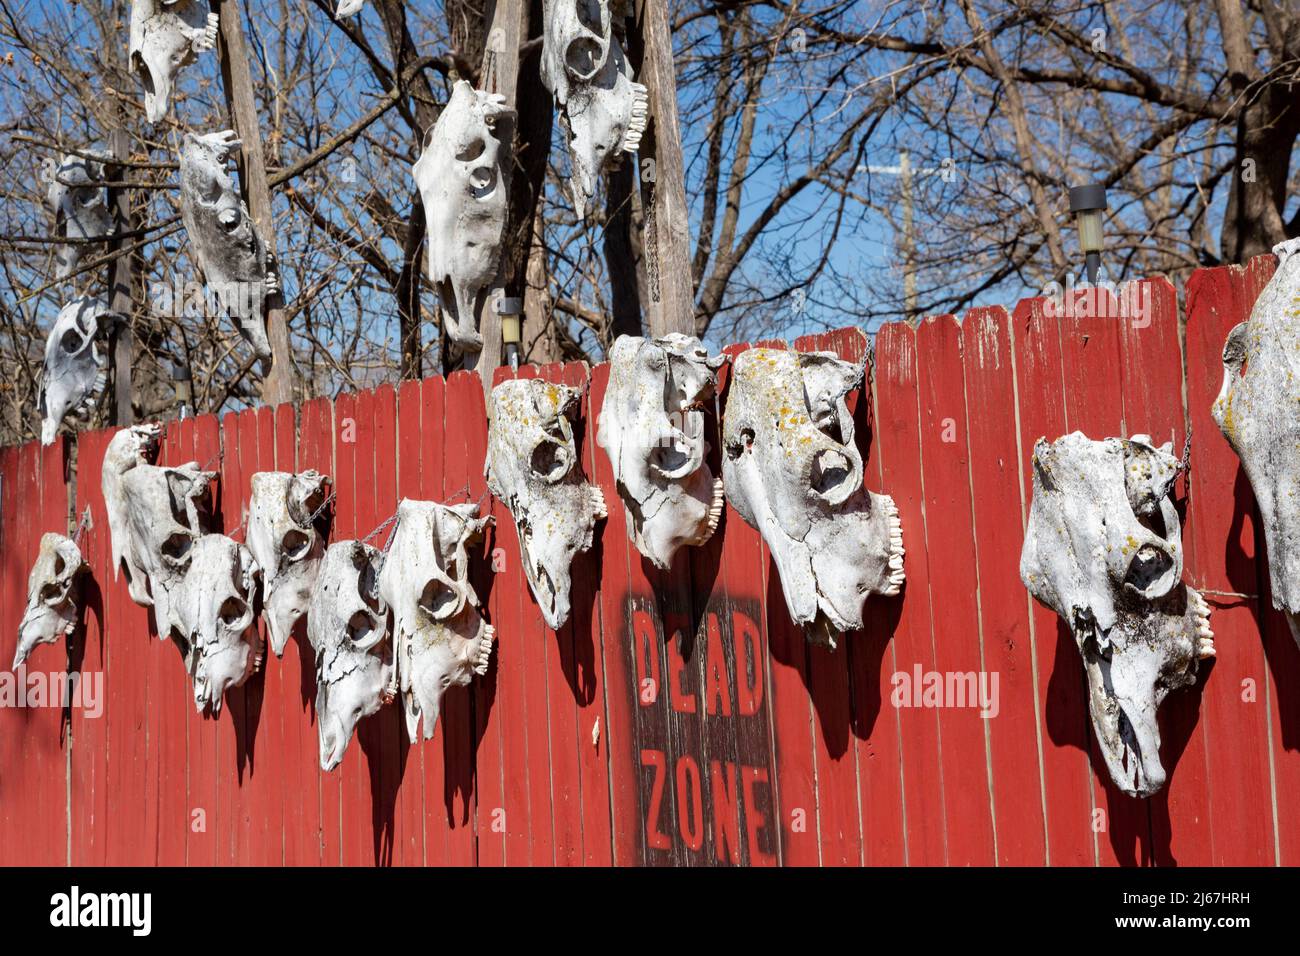 Coffeyville, Kansas - des crânes et des signes d'animaux restent en signe de protestation dans la « zone morte » après un déversement de pétrole de 2007 à la raffinerie de pétrole de Coffeyville Resources. Banque D'Images